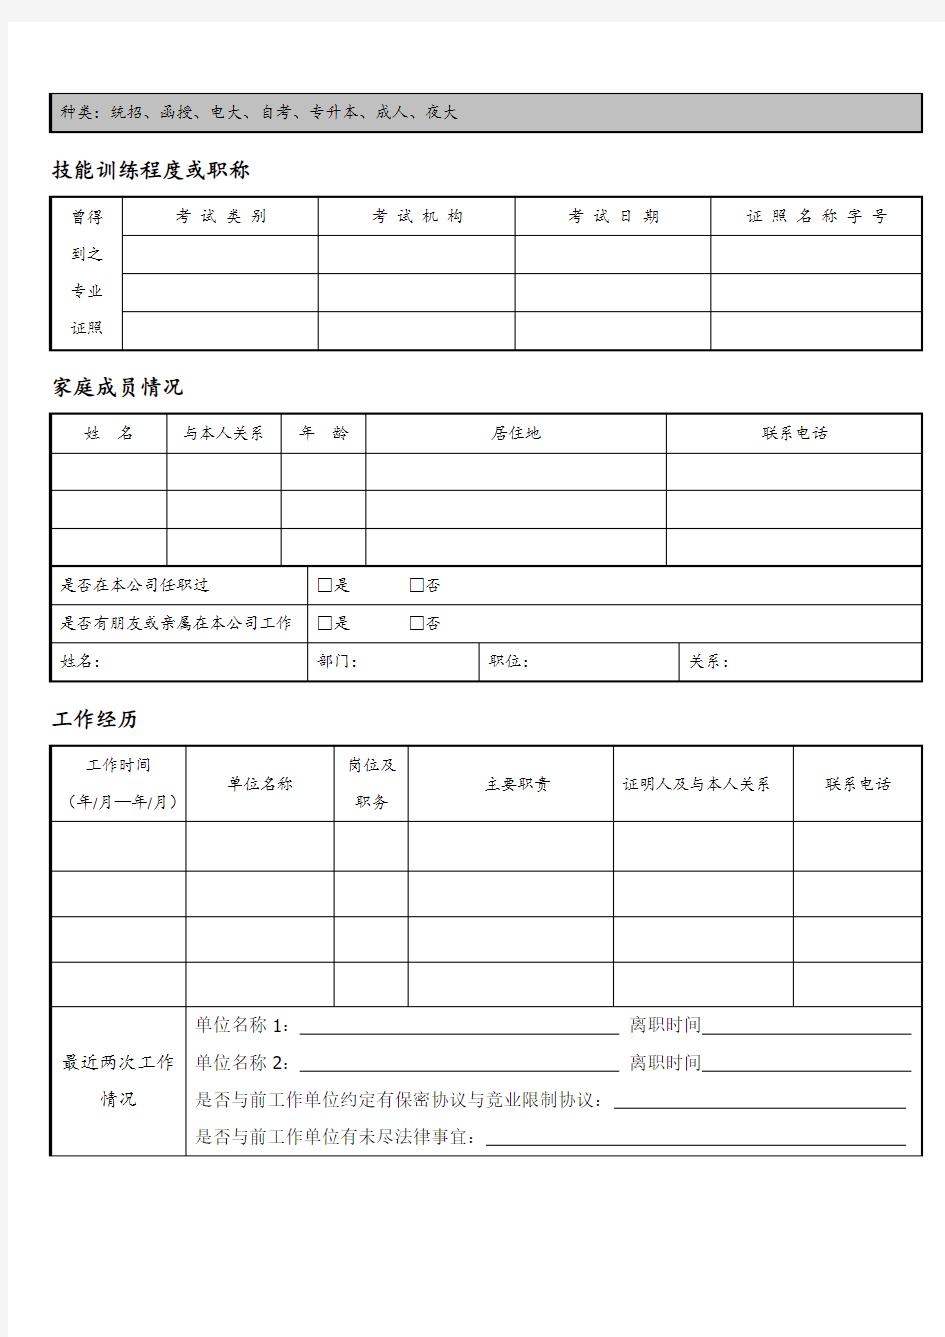 【入职管理】新入职员工履历表(填写模板)